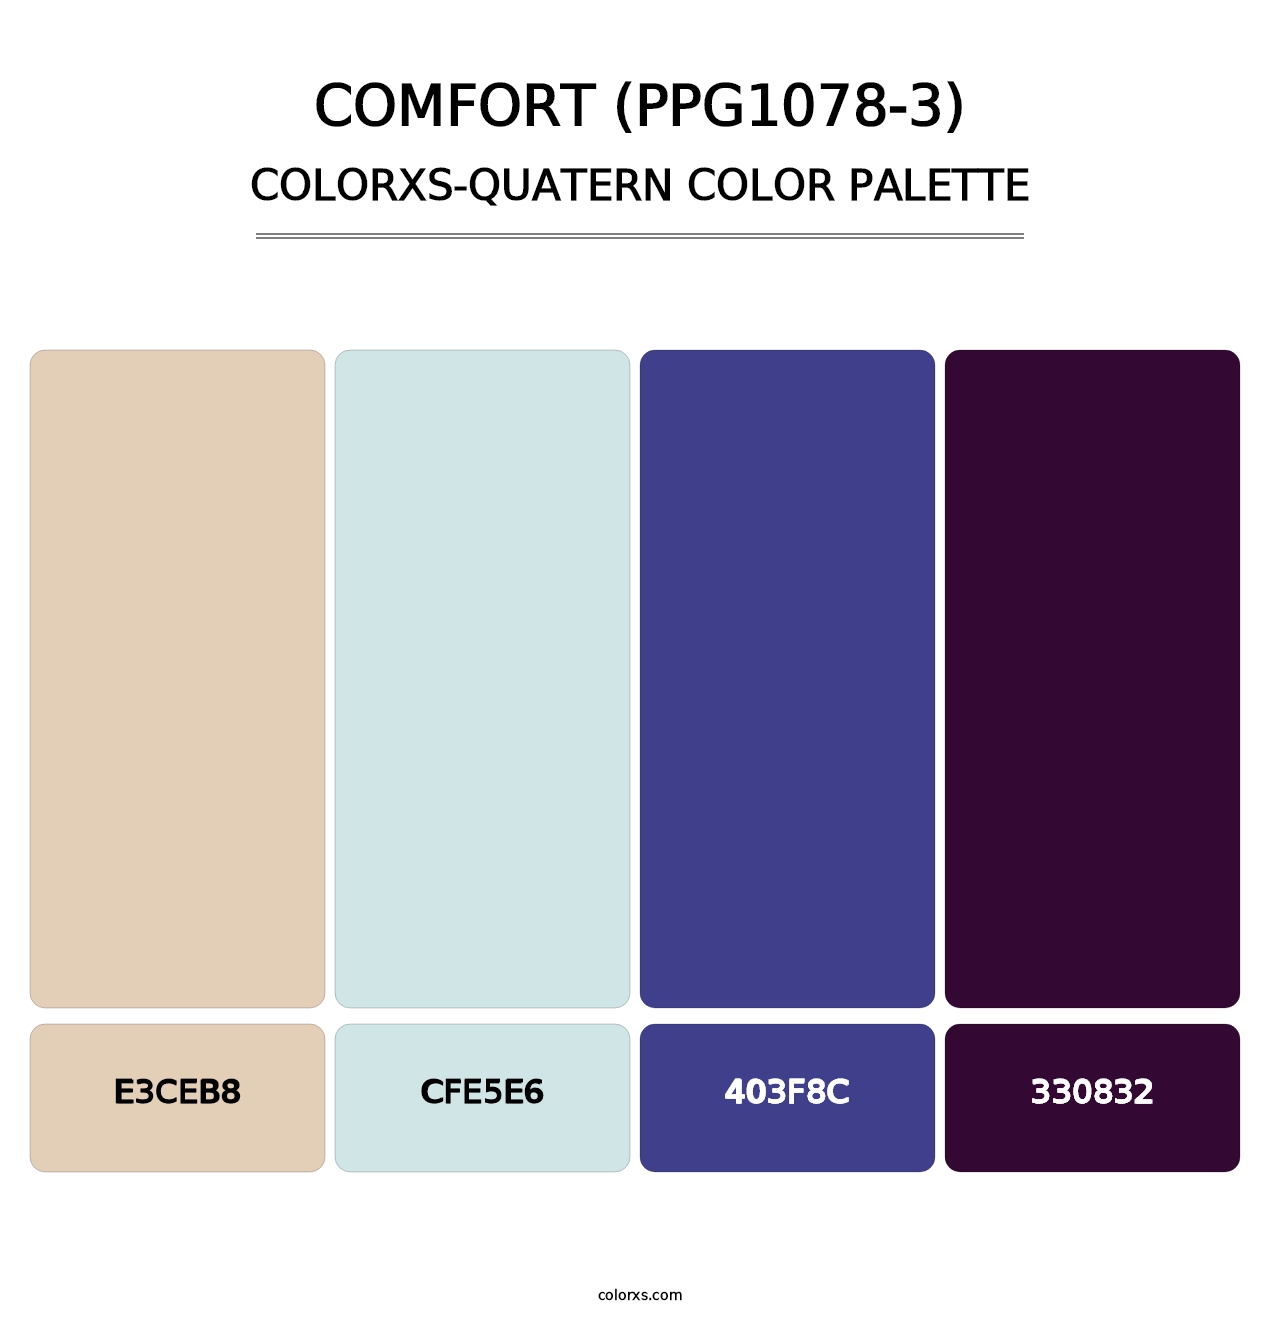 Comfort (PPG1078-3) - Colorxs Quatern Palette